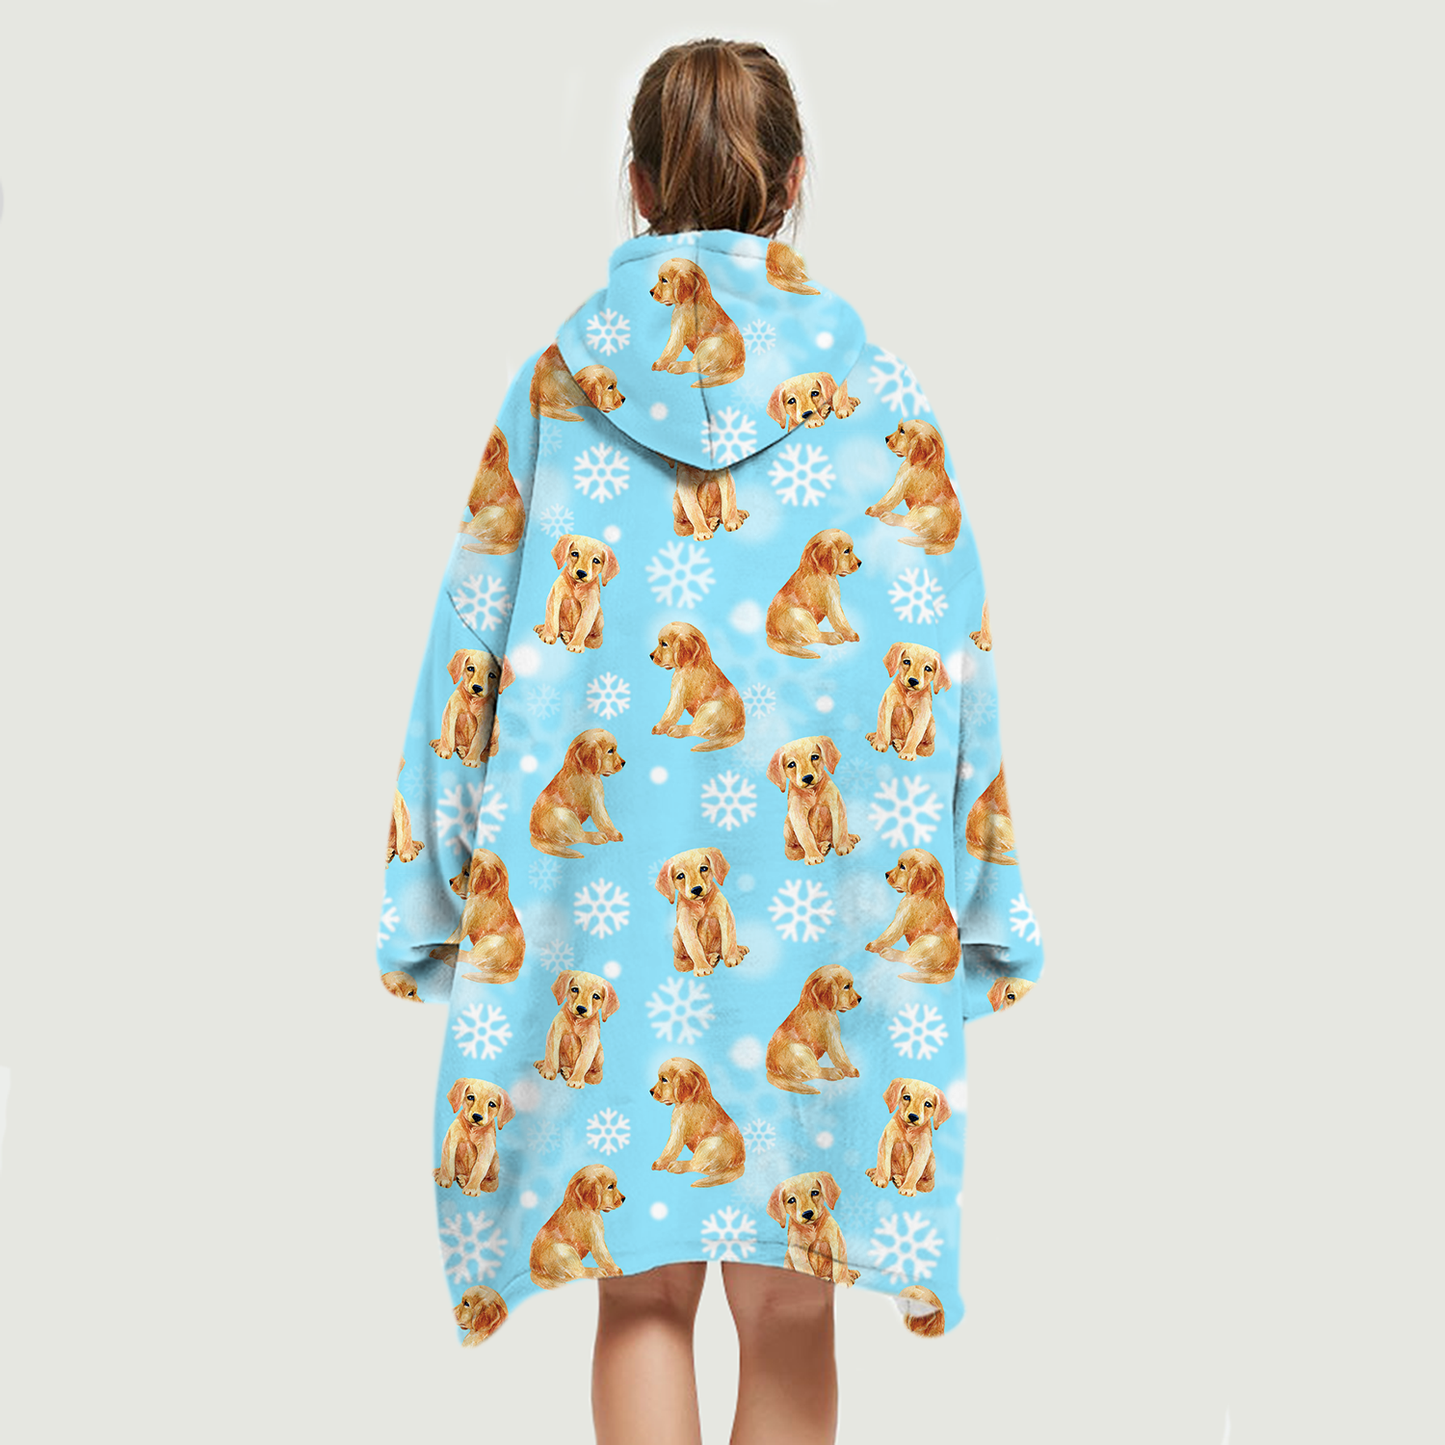 I Love Snows - Golden Retriever Fleece Blanket Hoodie